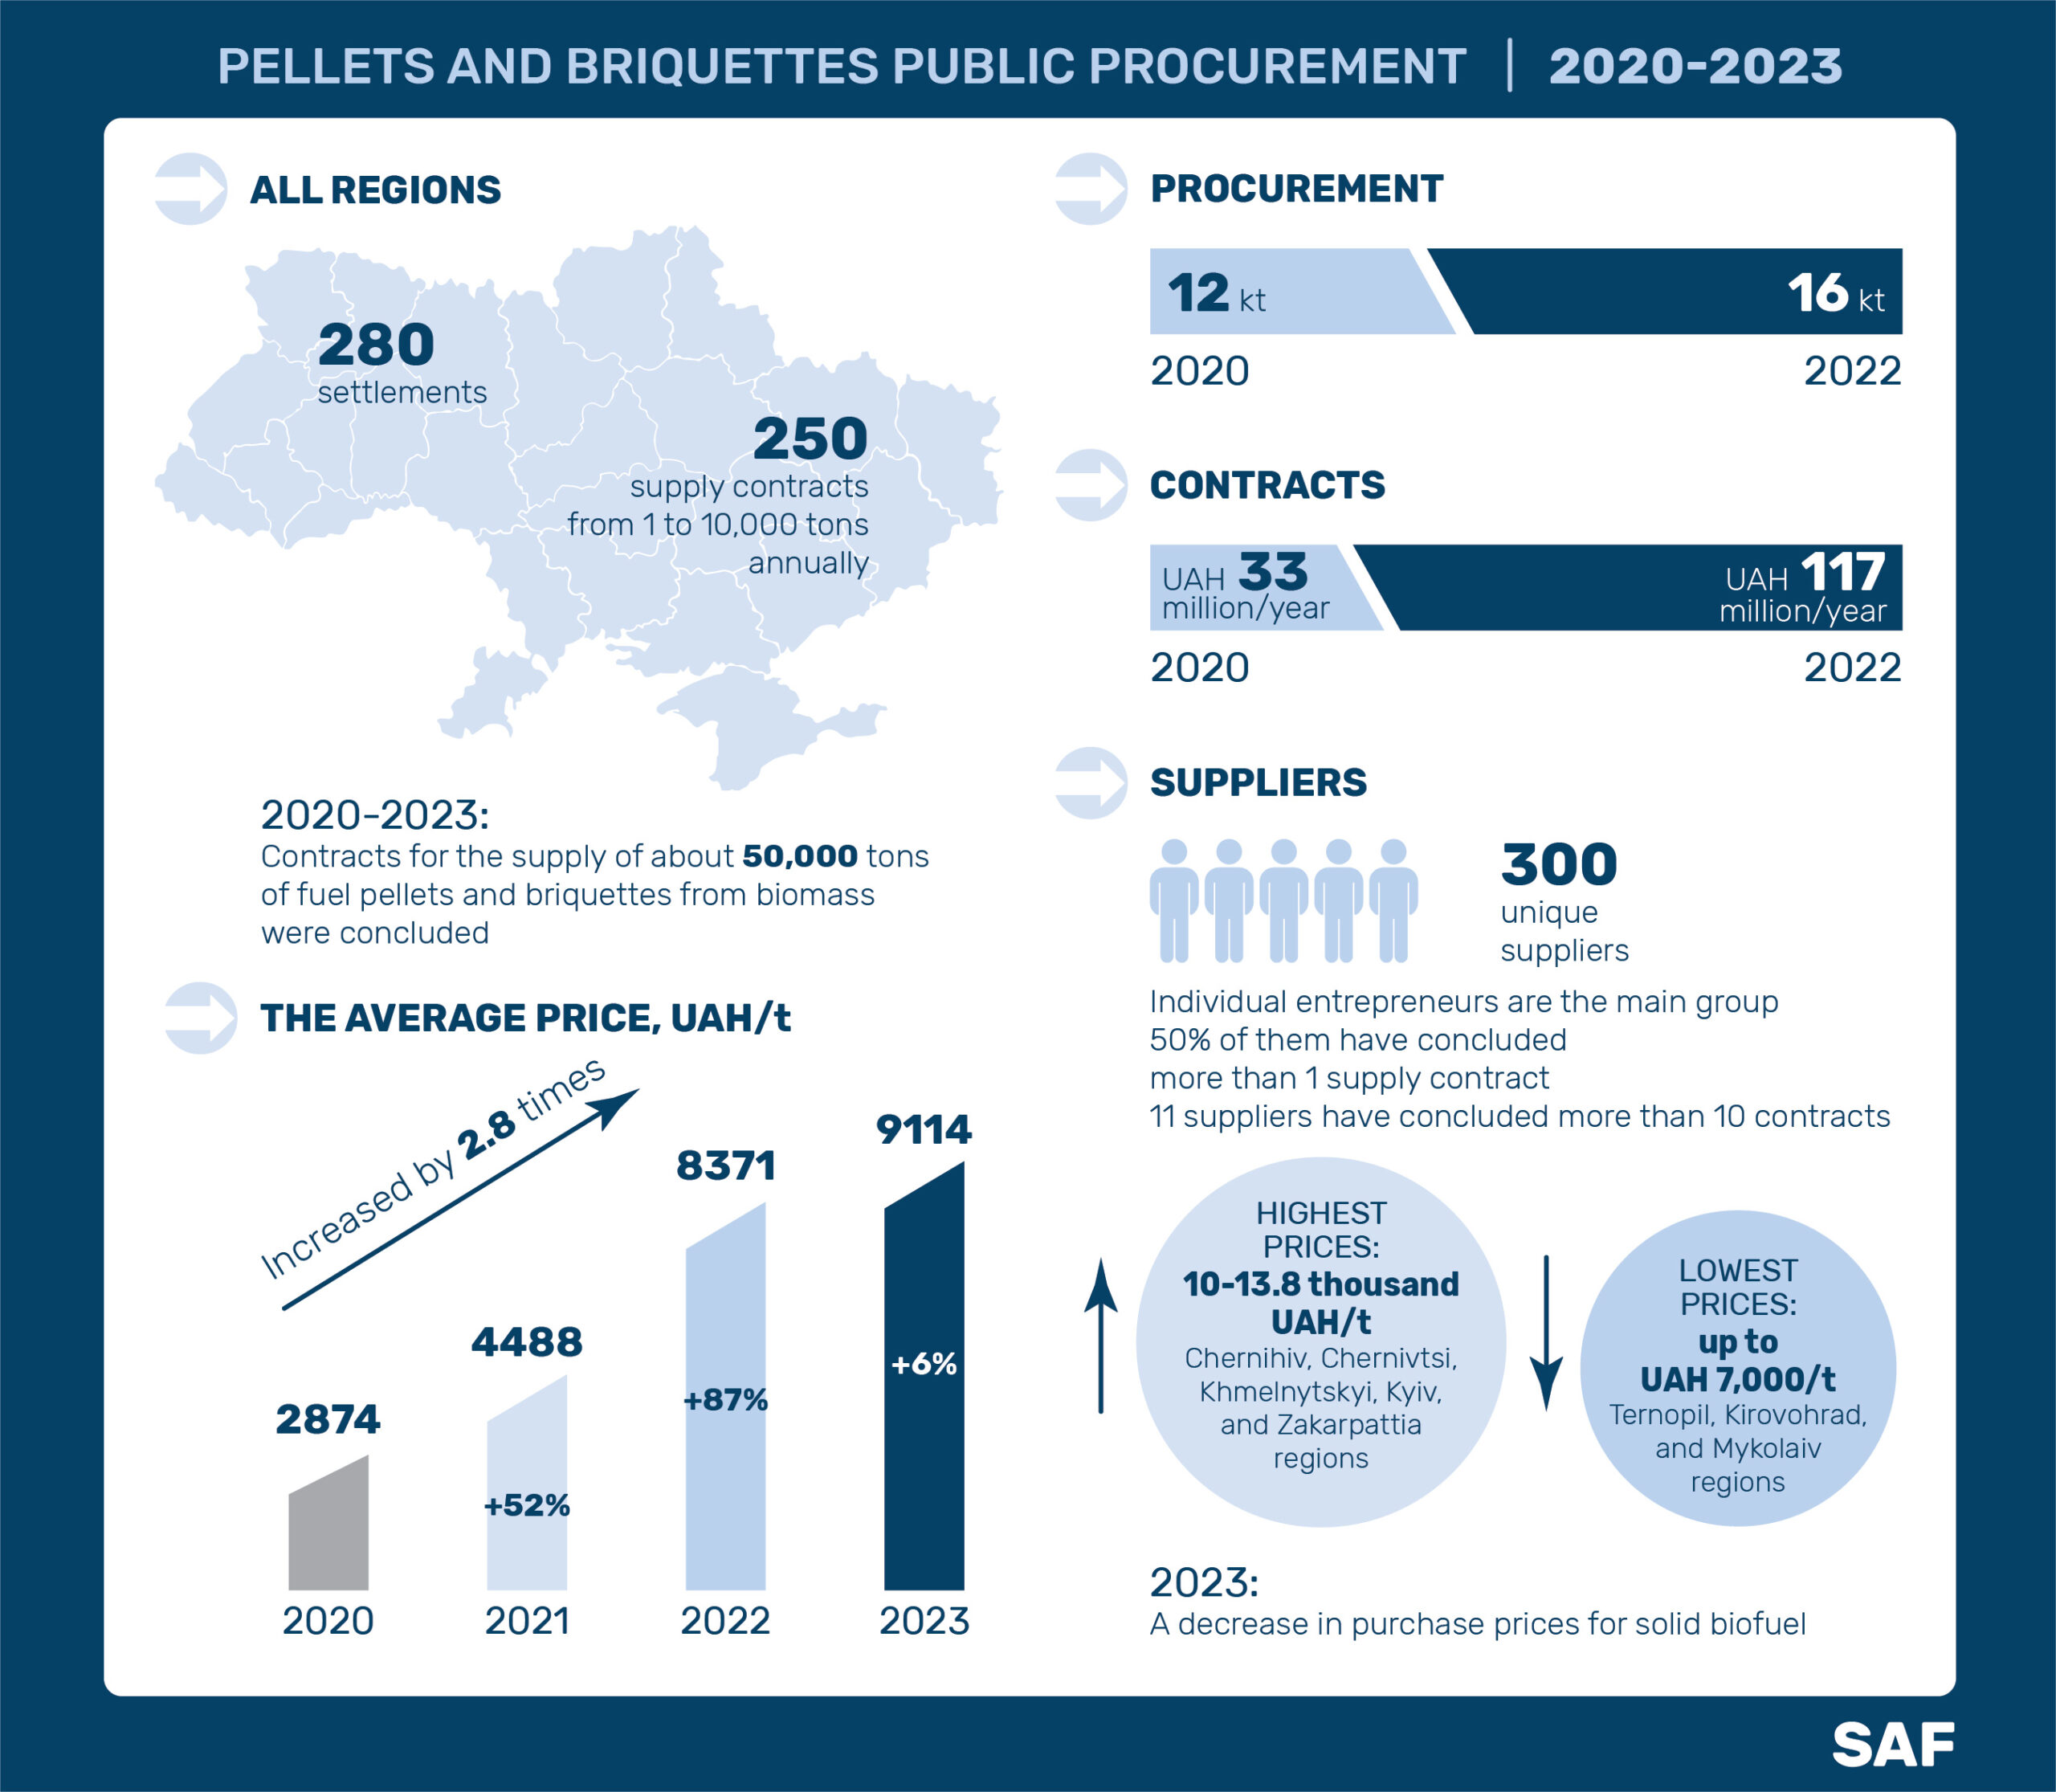 Analysis of public procurement of pellets and briquettes